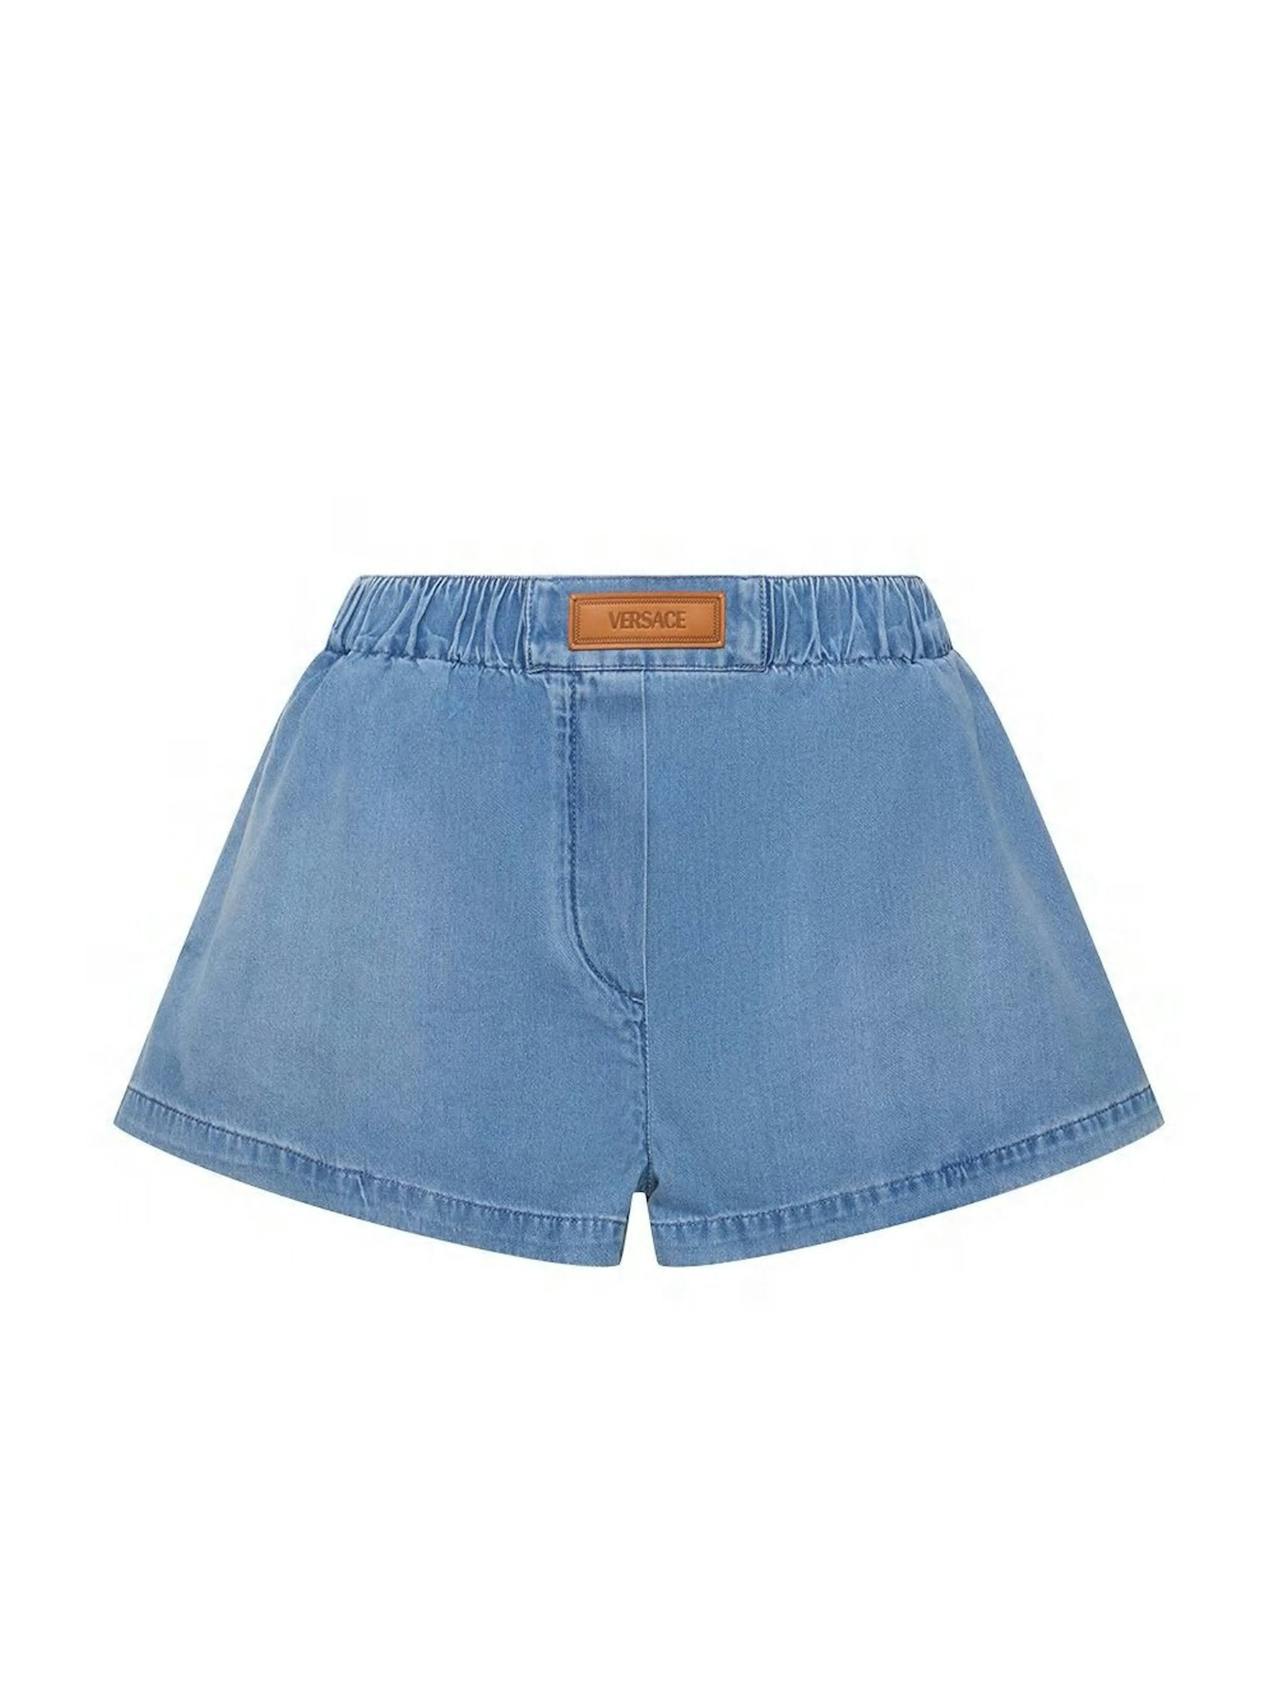 Stonewashed denim shorts